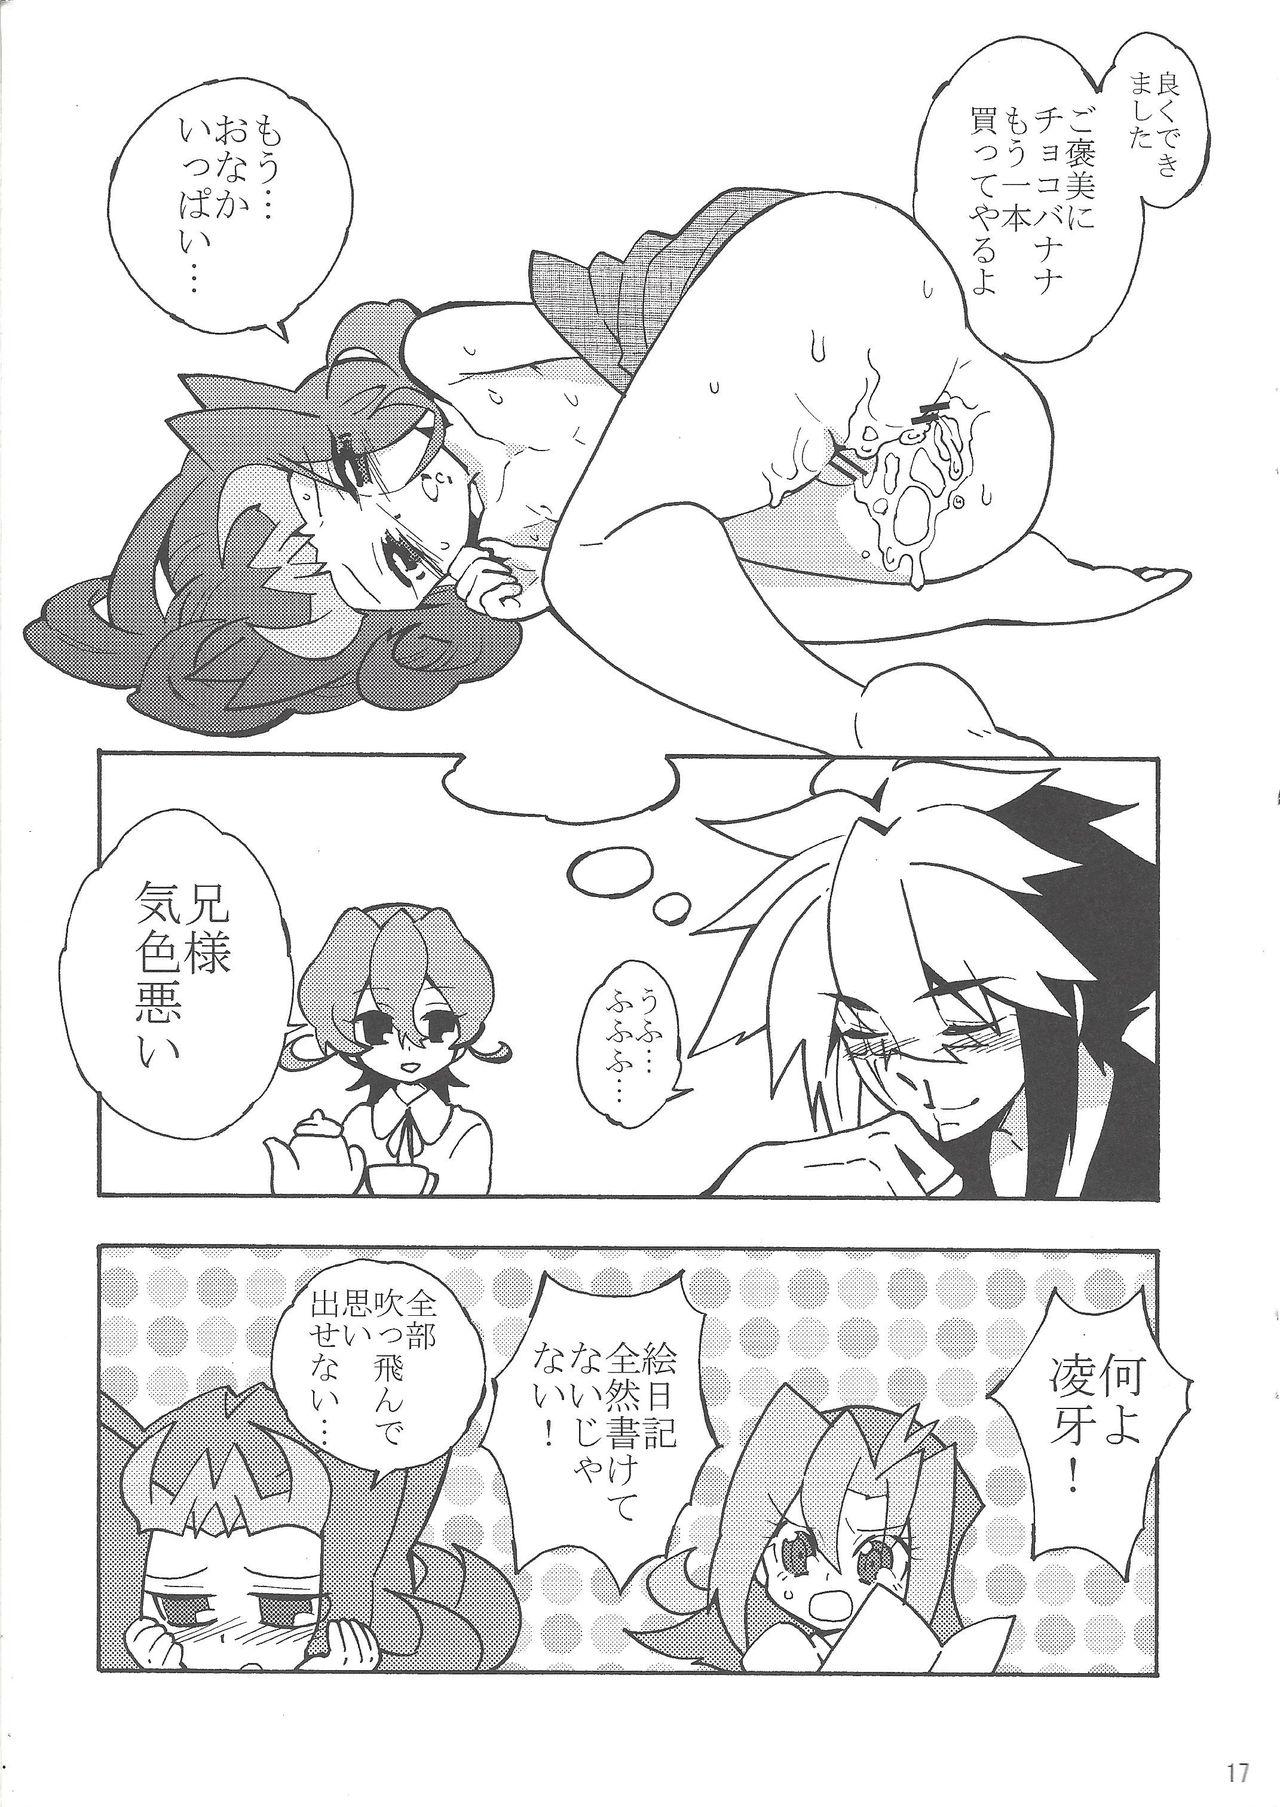 Cuckolding Natsuyasumi no Kioku o Torimodoshite kure! - Yu-gi-oh zexal Leaked - Page 16